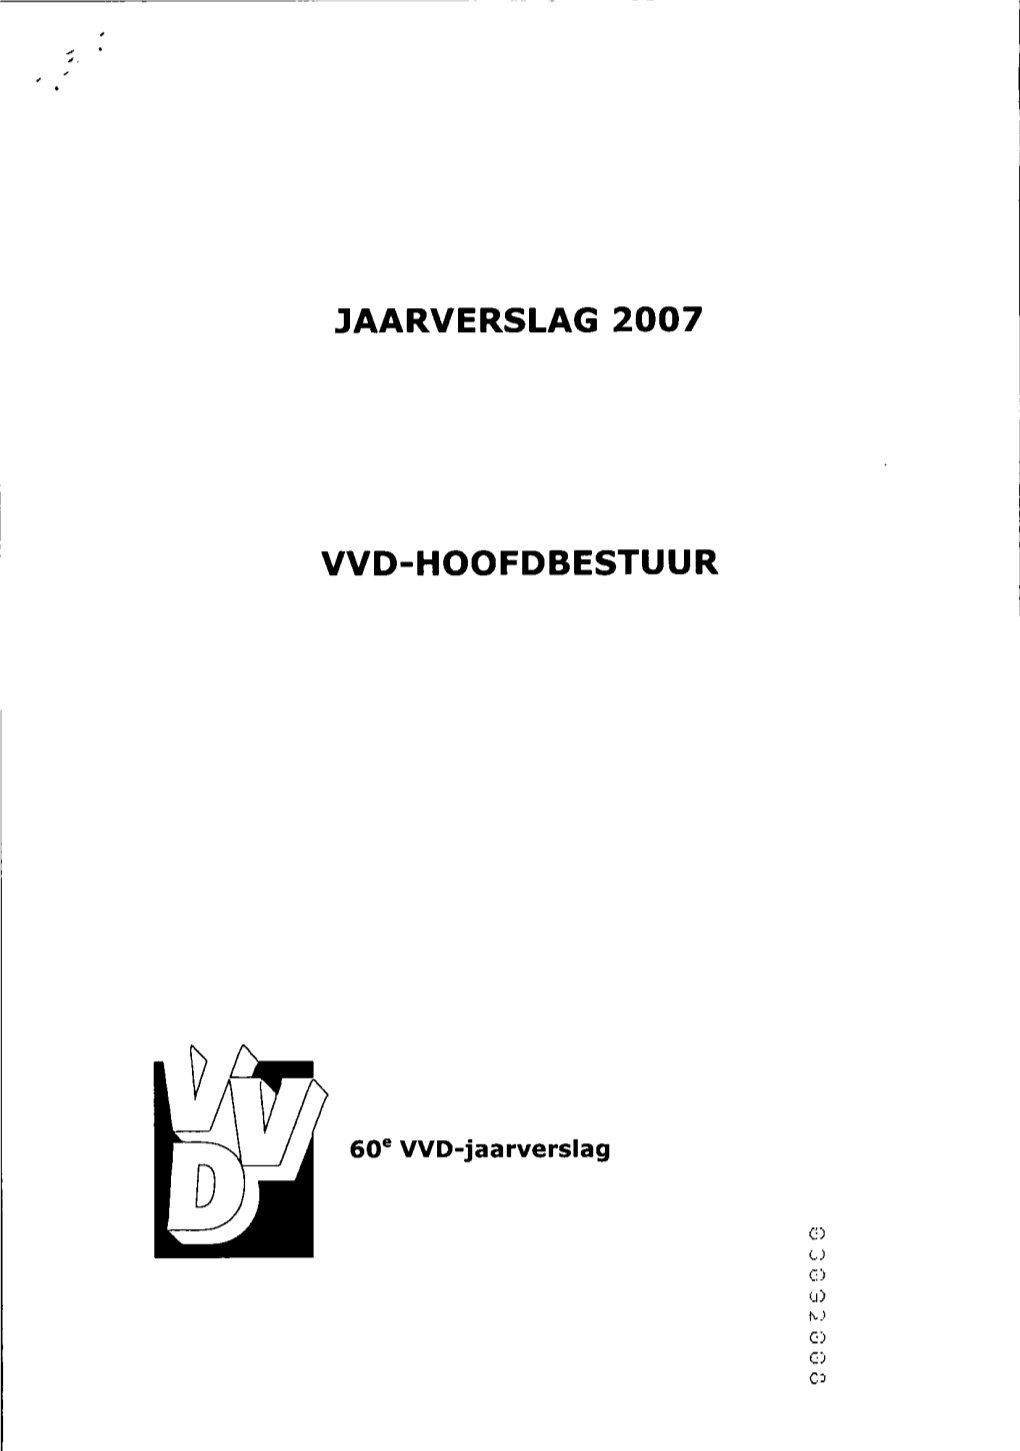 Jaarverslag 2007 Vvd-Hoofdbestuur